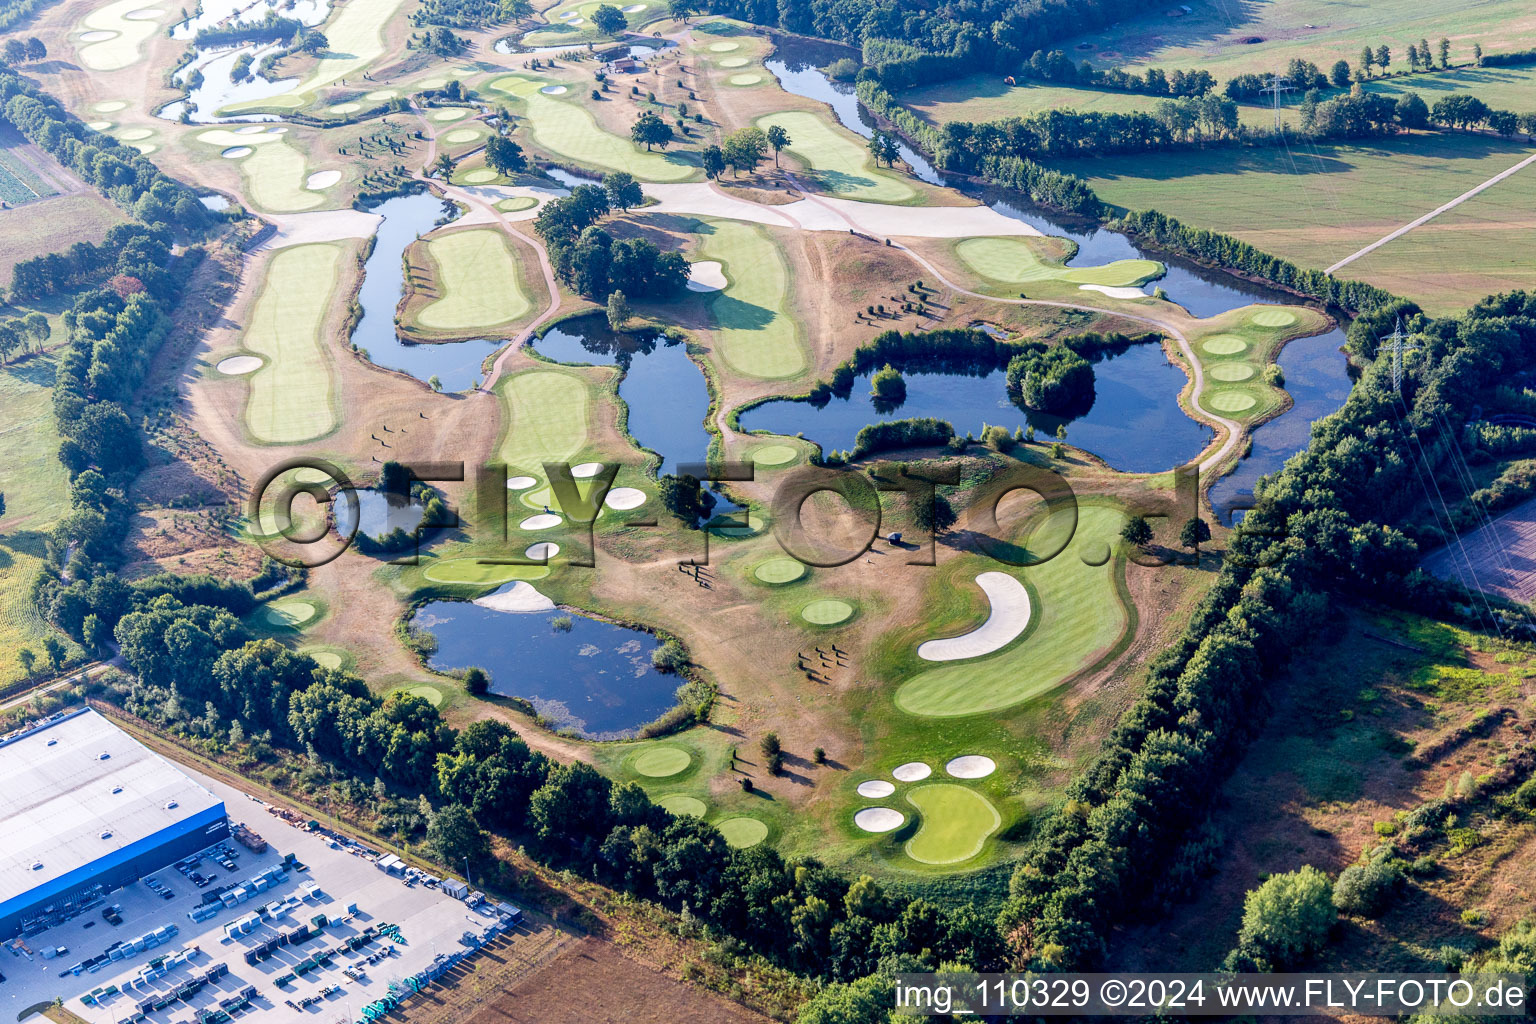 Luftbild von Gelände des Golfplatz Green Eagle Golf Courses in Winsen (Luhe) im Bundesland Niedersachsen, Deutschland